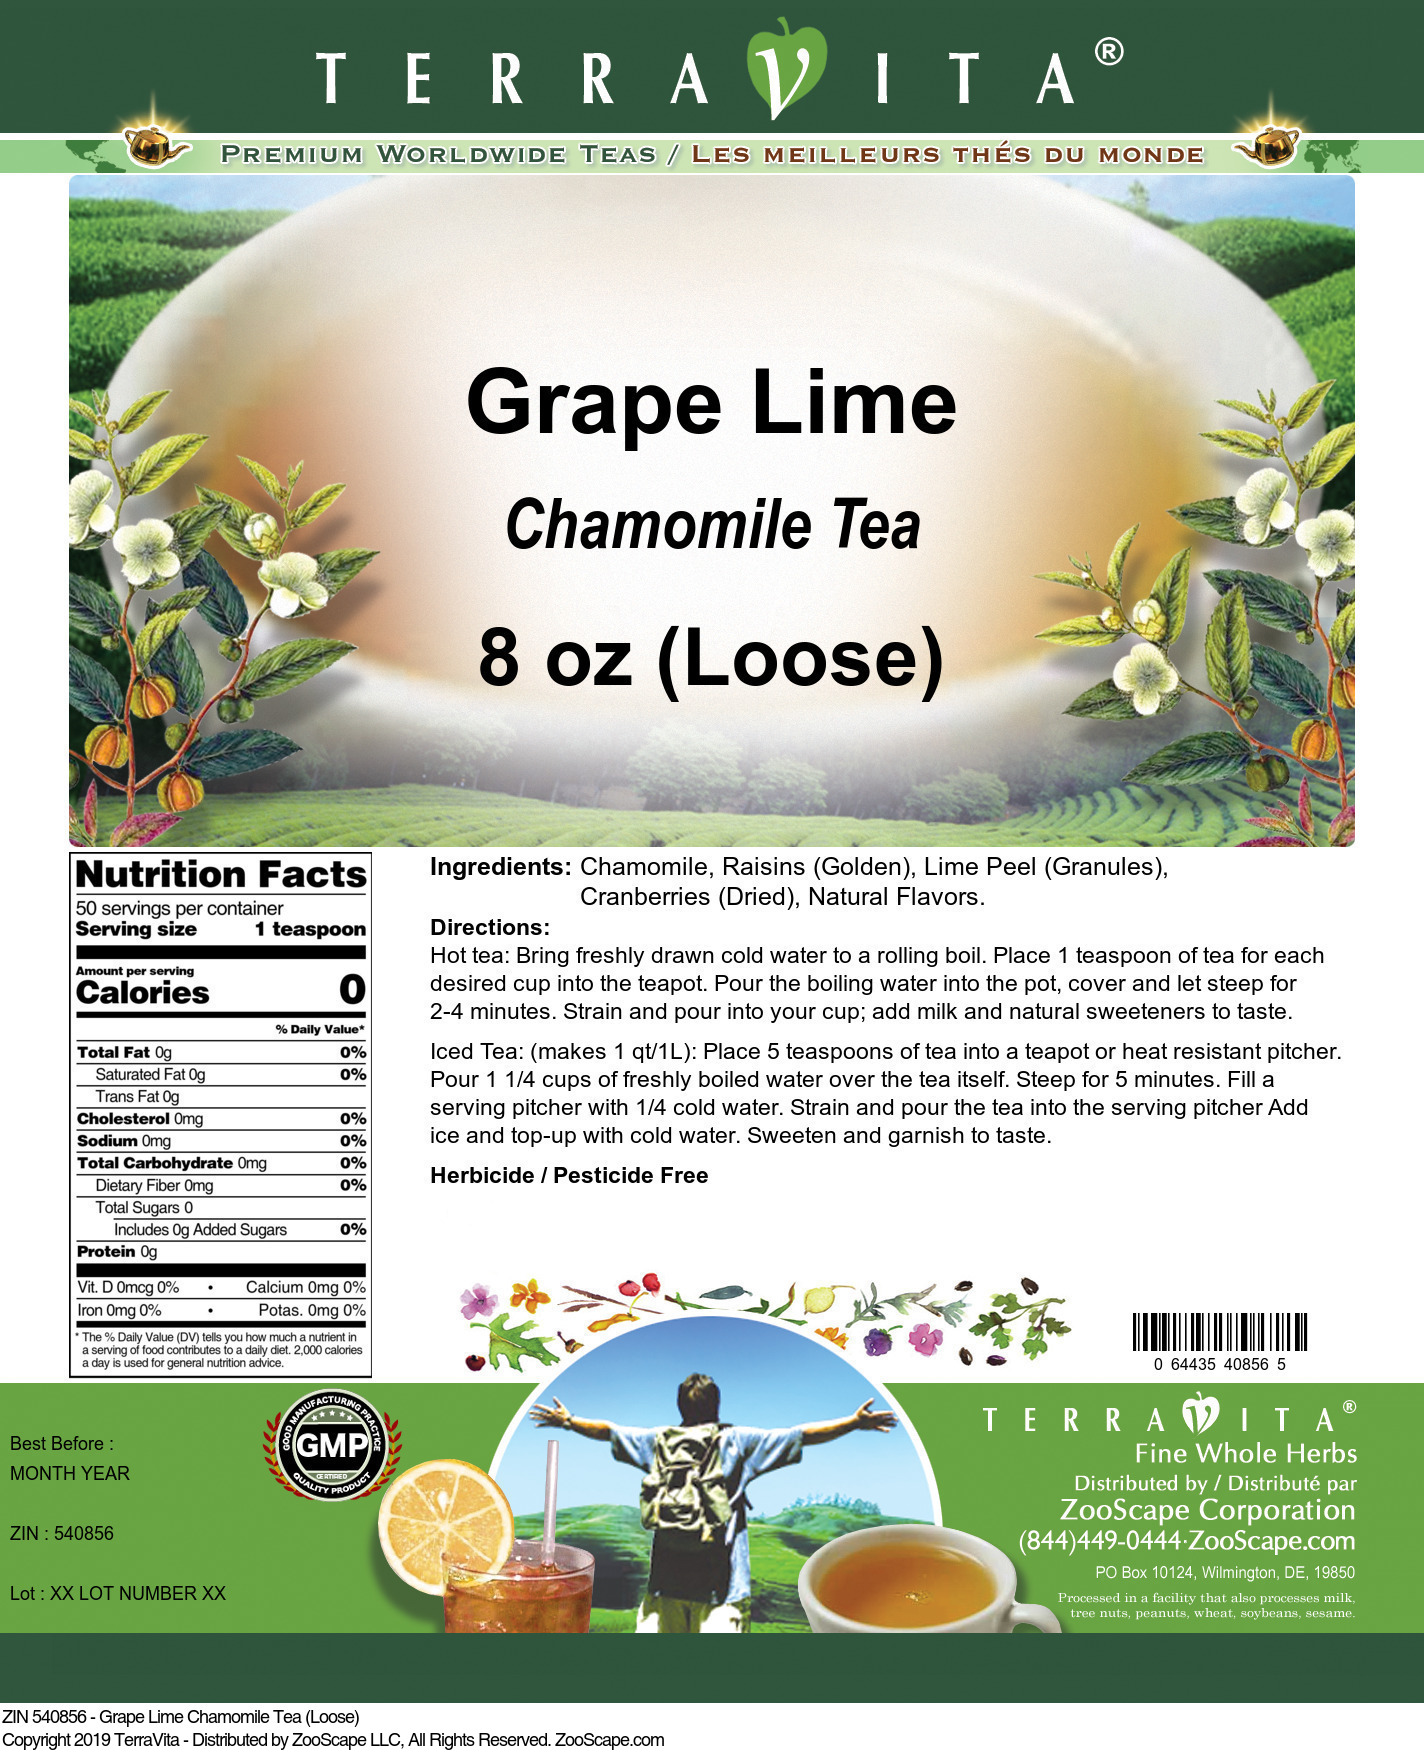 Grape Lime Chamomile Tea (Loose) - Label